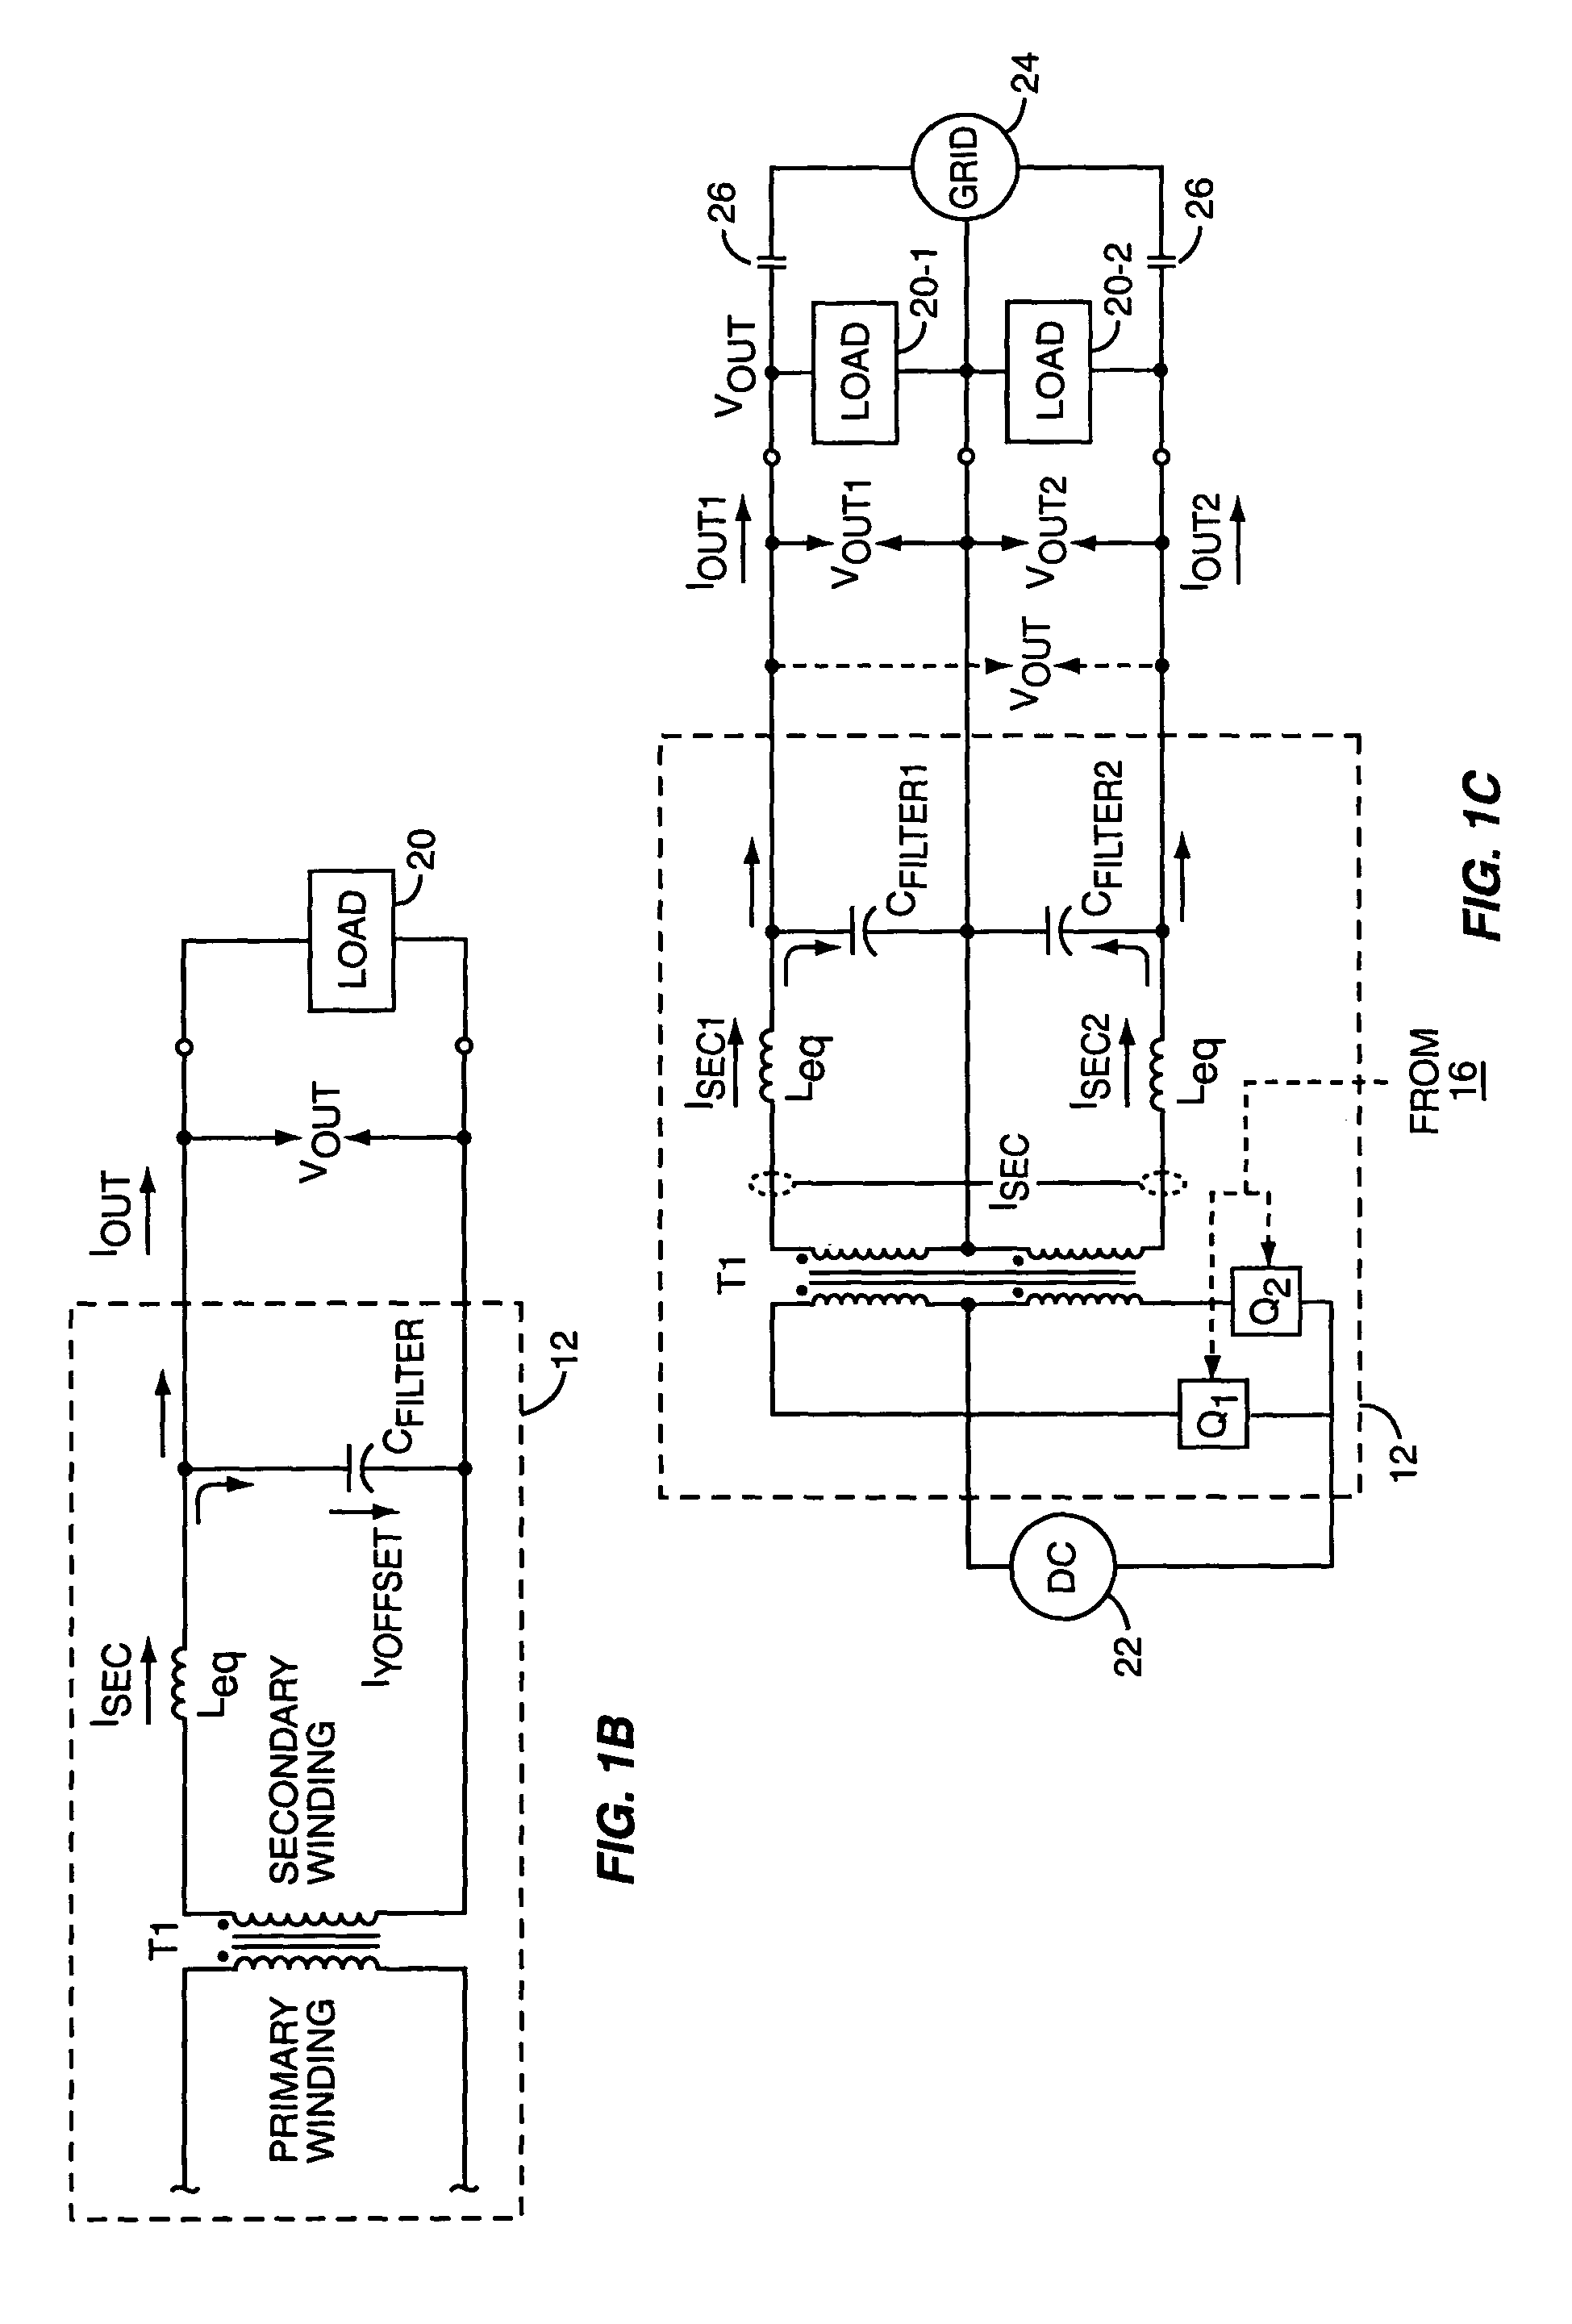 Power regulator for power inverter